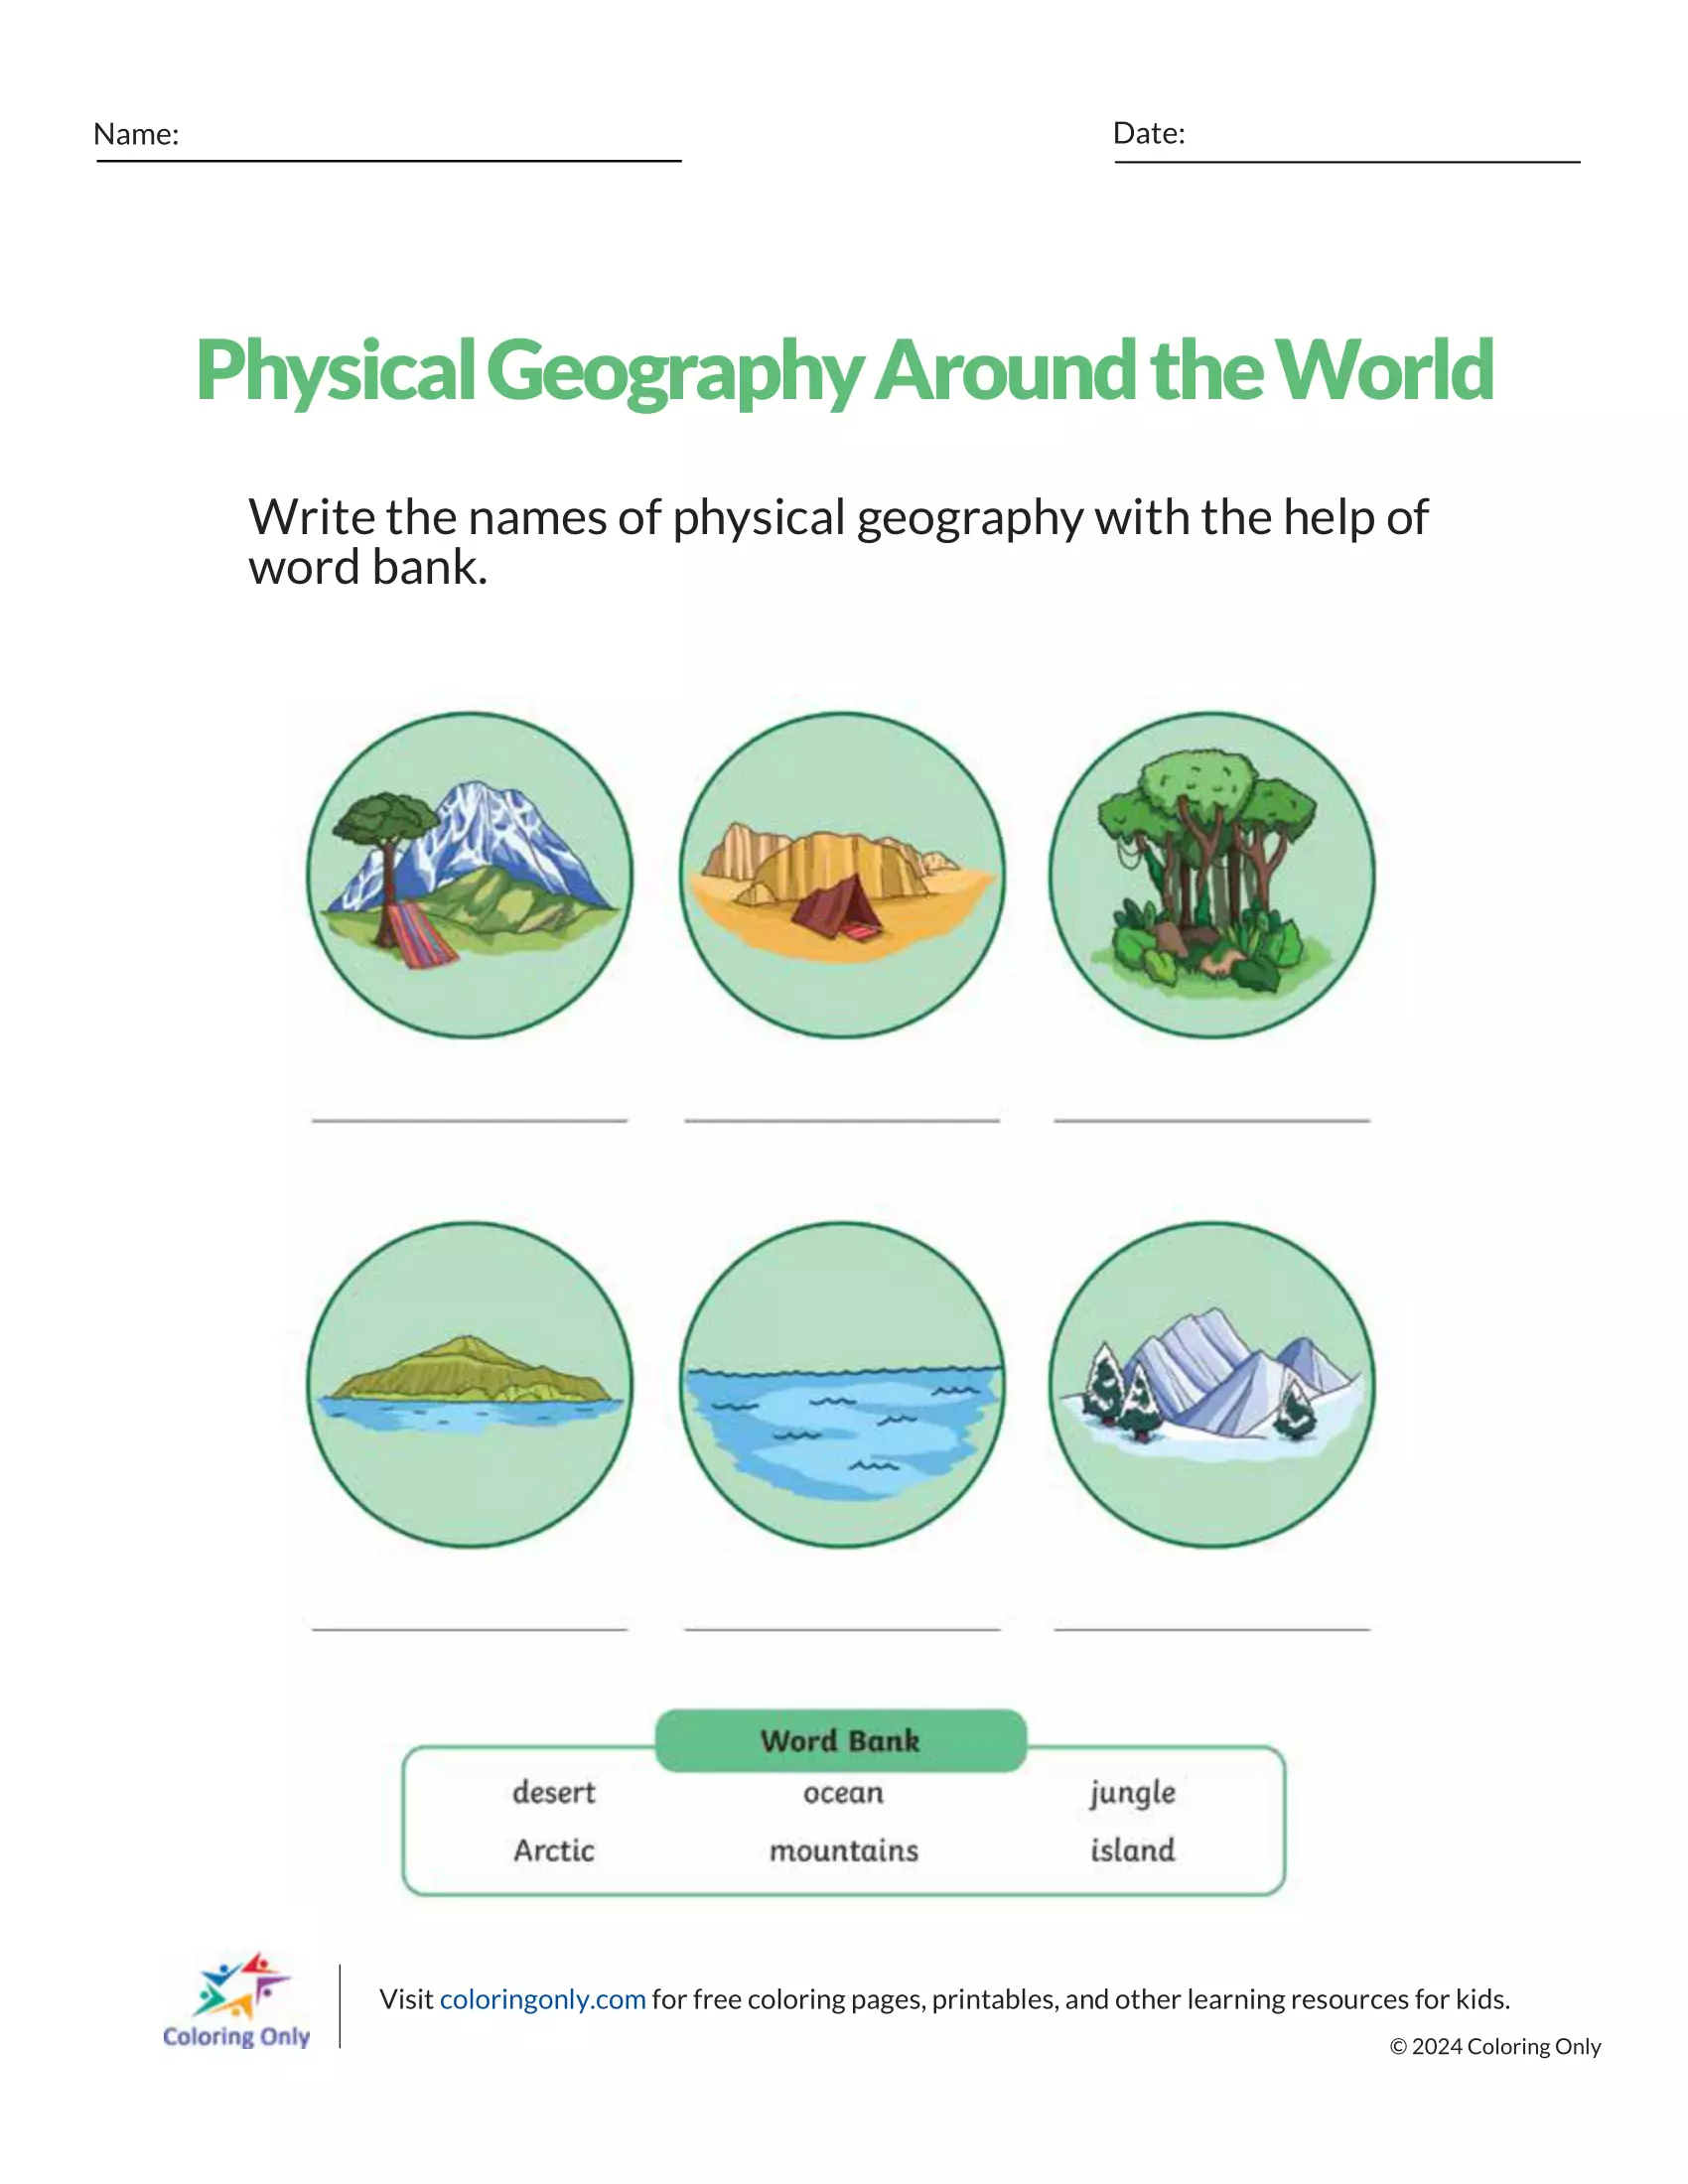 Physische Geographie auf der ganzen Welt Kostenloses druckbares Arbeitsblatt